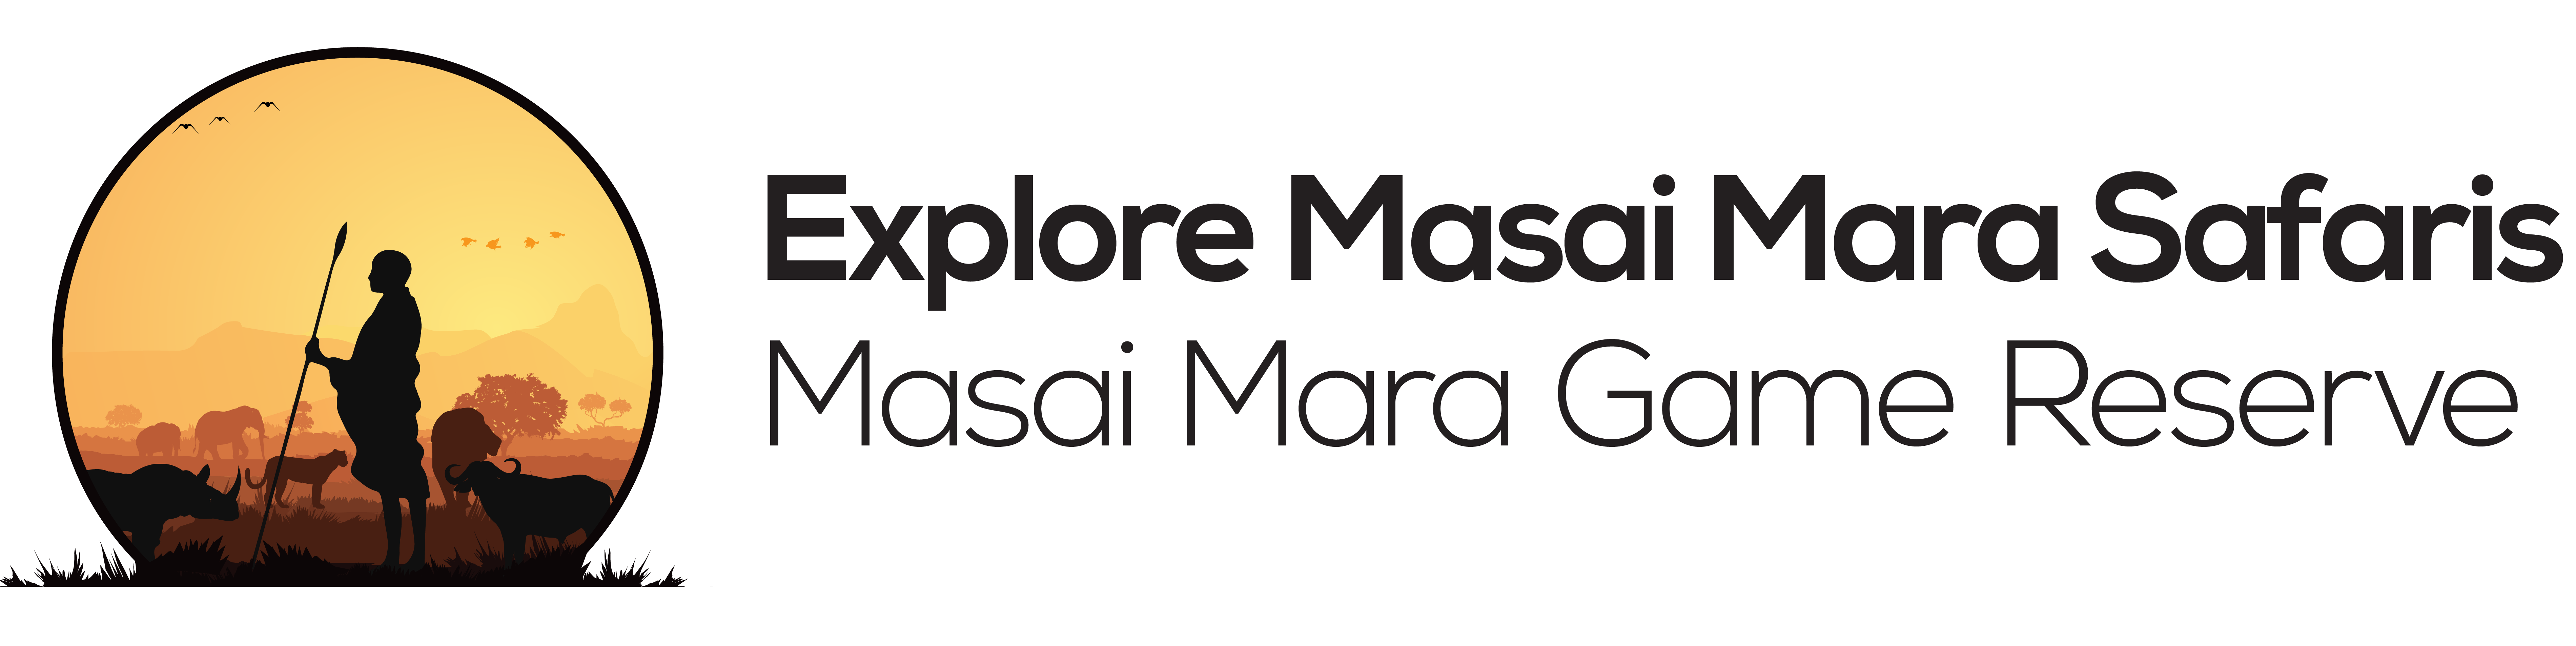 Explore masai mara | Game Drive in masai  mara - Game drives in masai reserve